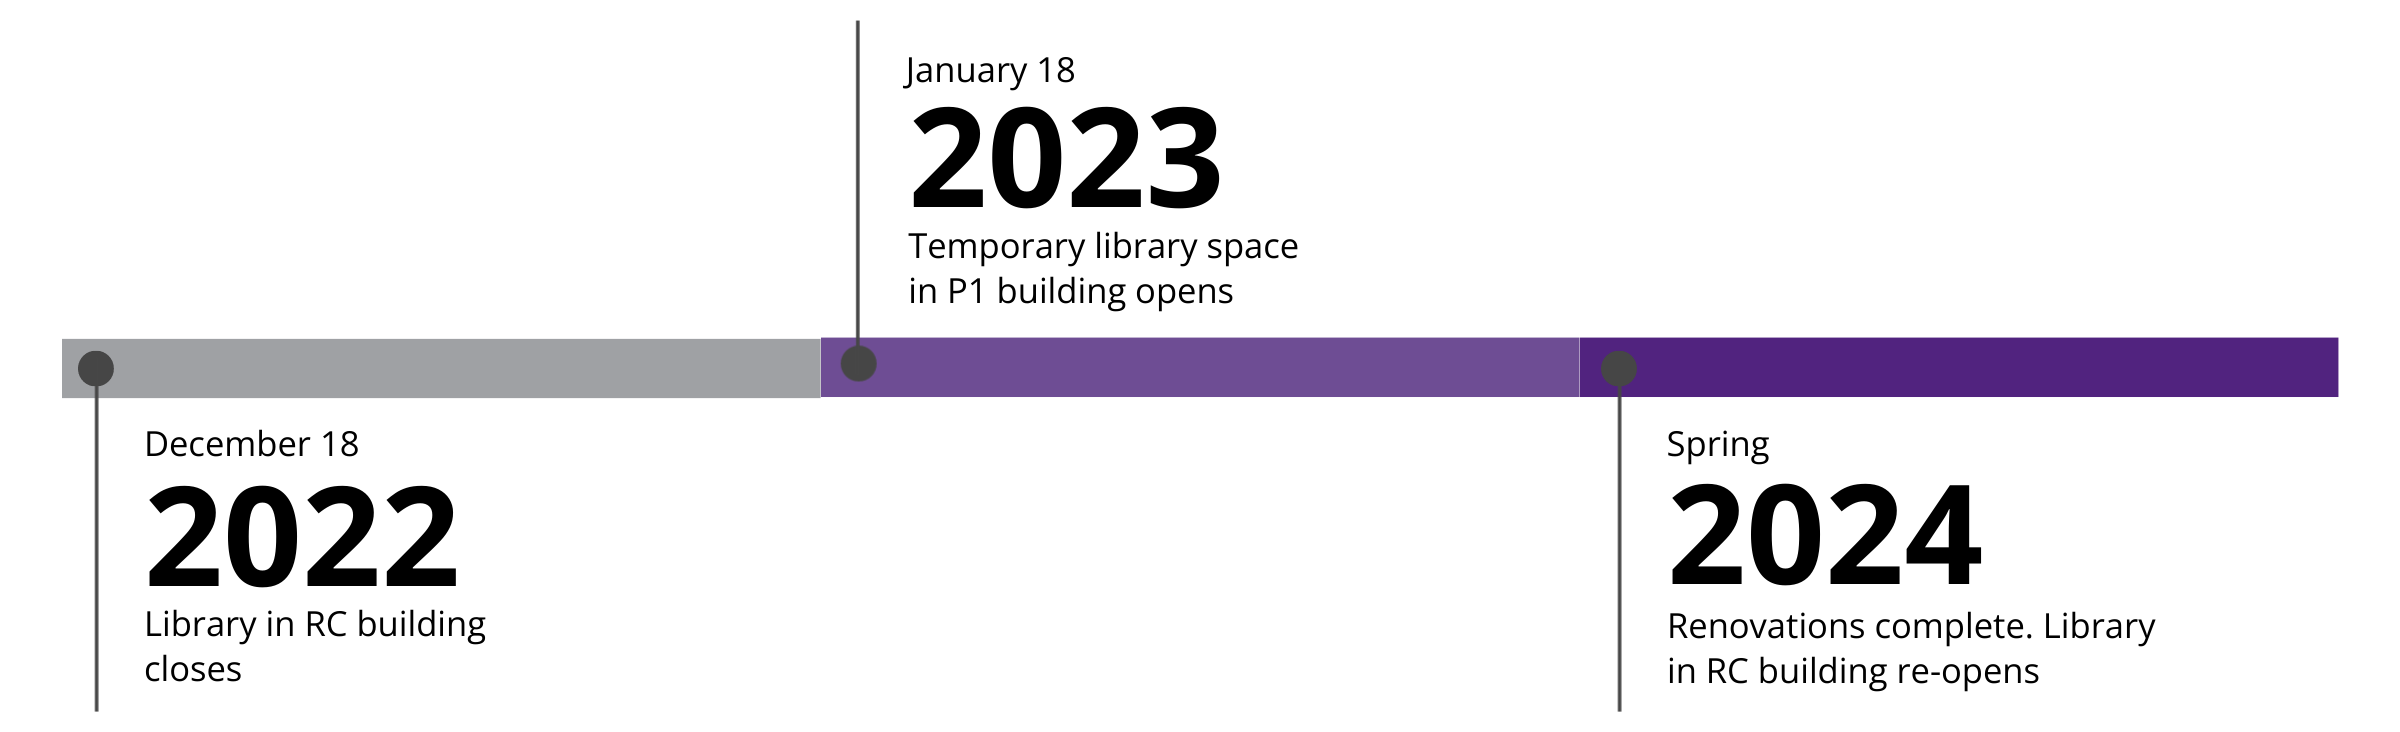 TP/SS图书馆改造时间表。2022年12月18日:RC大楼图书馆关闭。2023年1月23日:P1楼临时图书馆开放。2024年春季:装修完成。钢筋混凝土大厦图书馆重新开放。